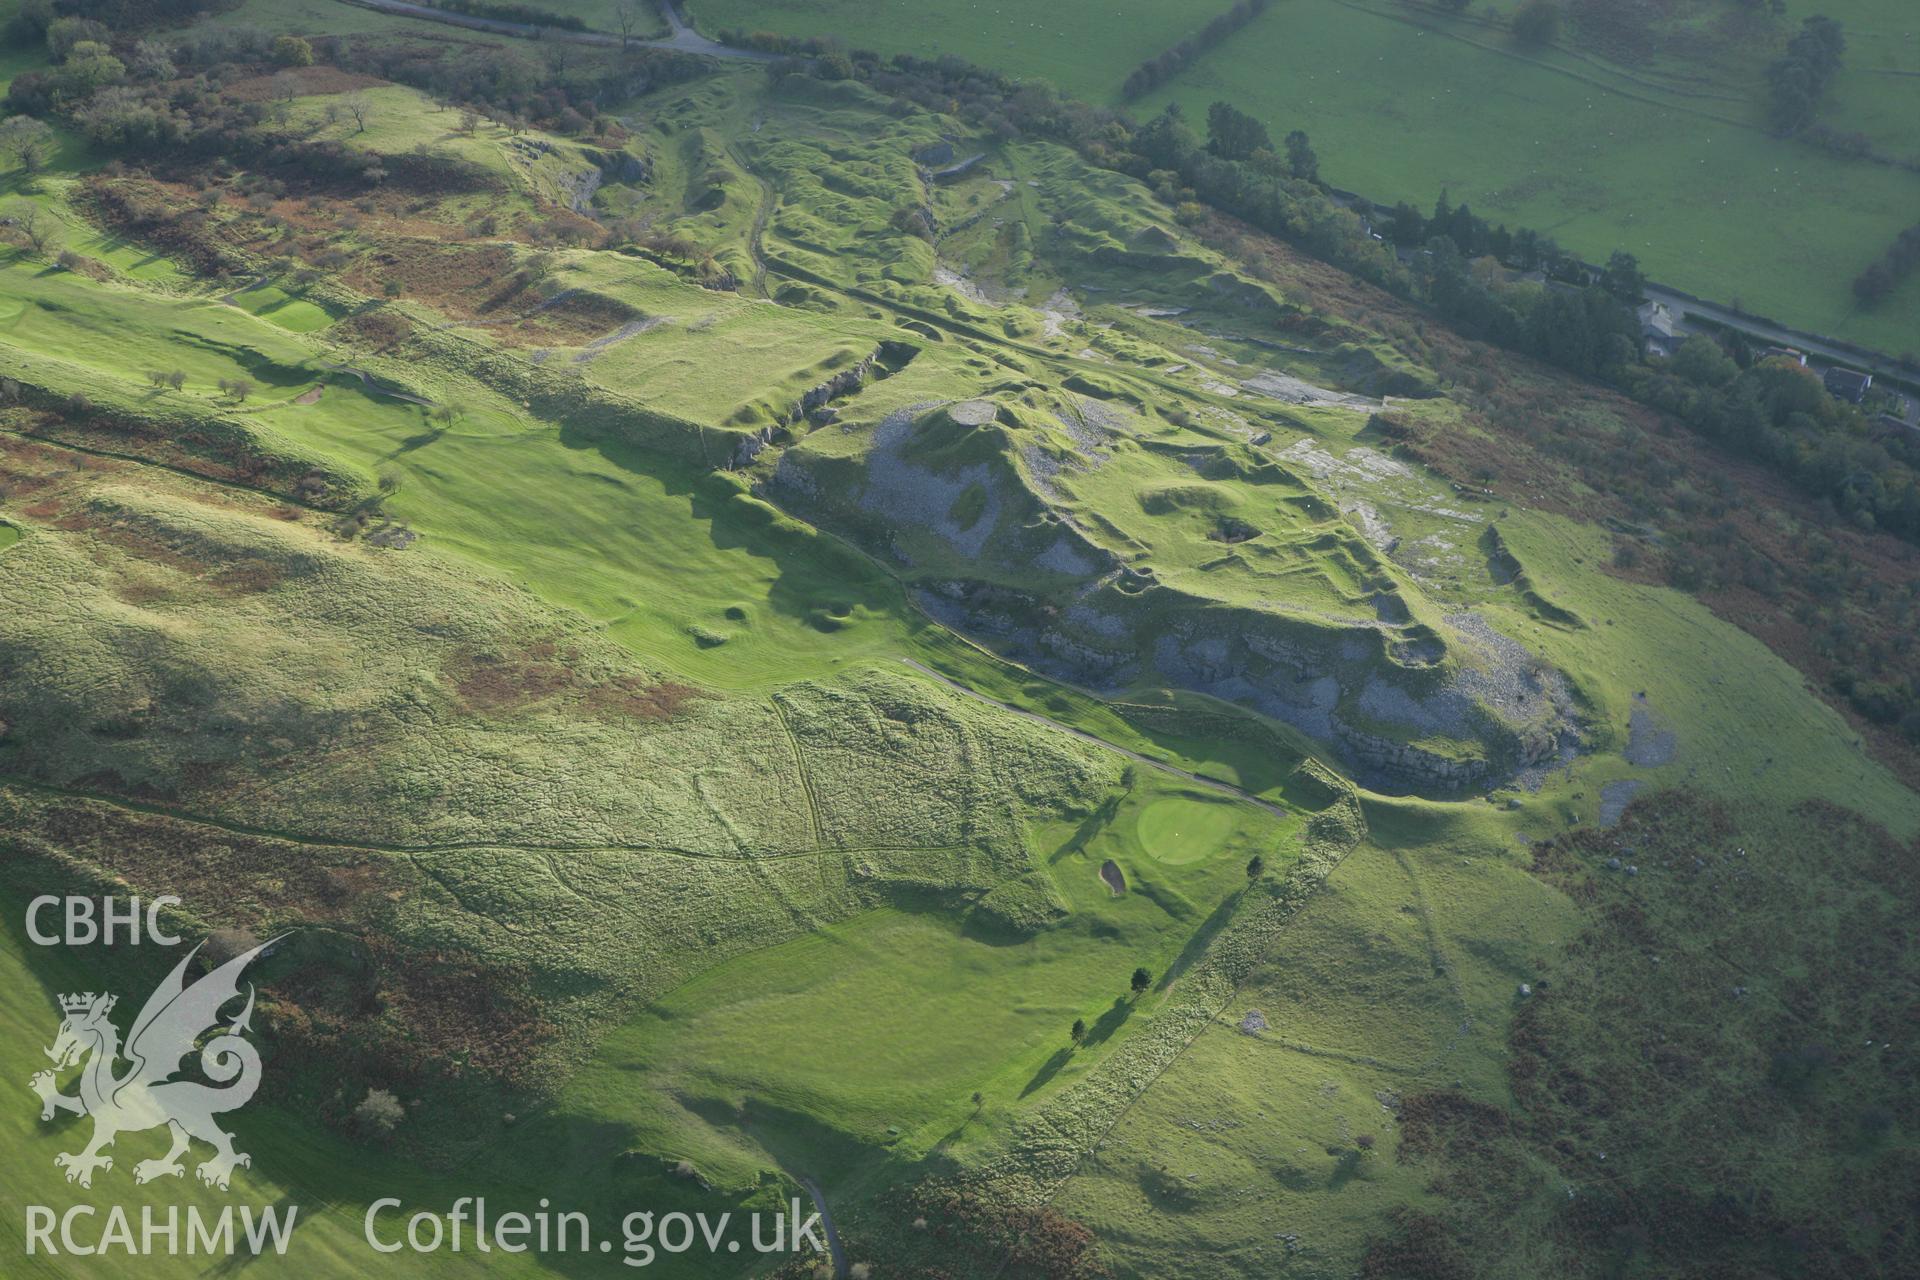 RCAHMW colour oblique photograph of Morlais Castle. Taken by Toby Driver on 16/10/2008.